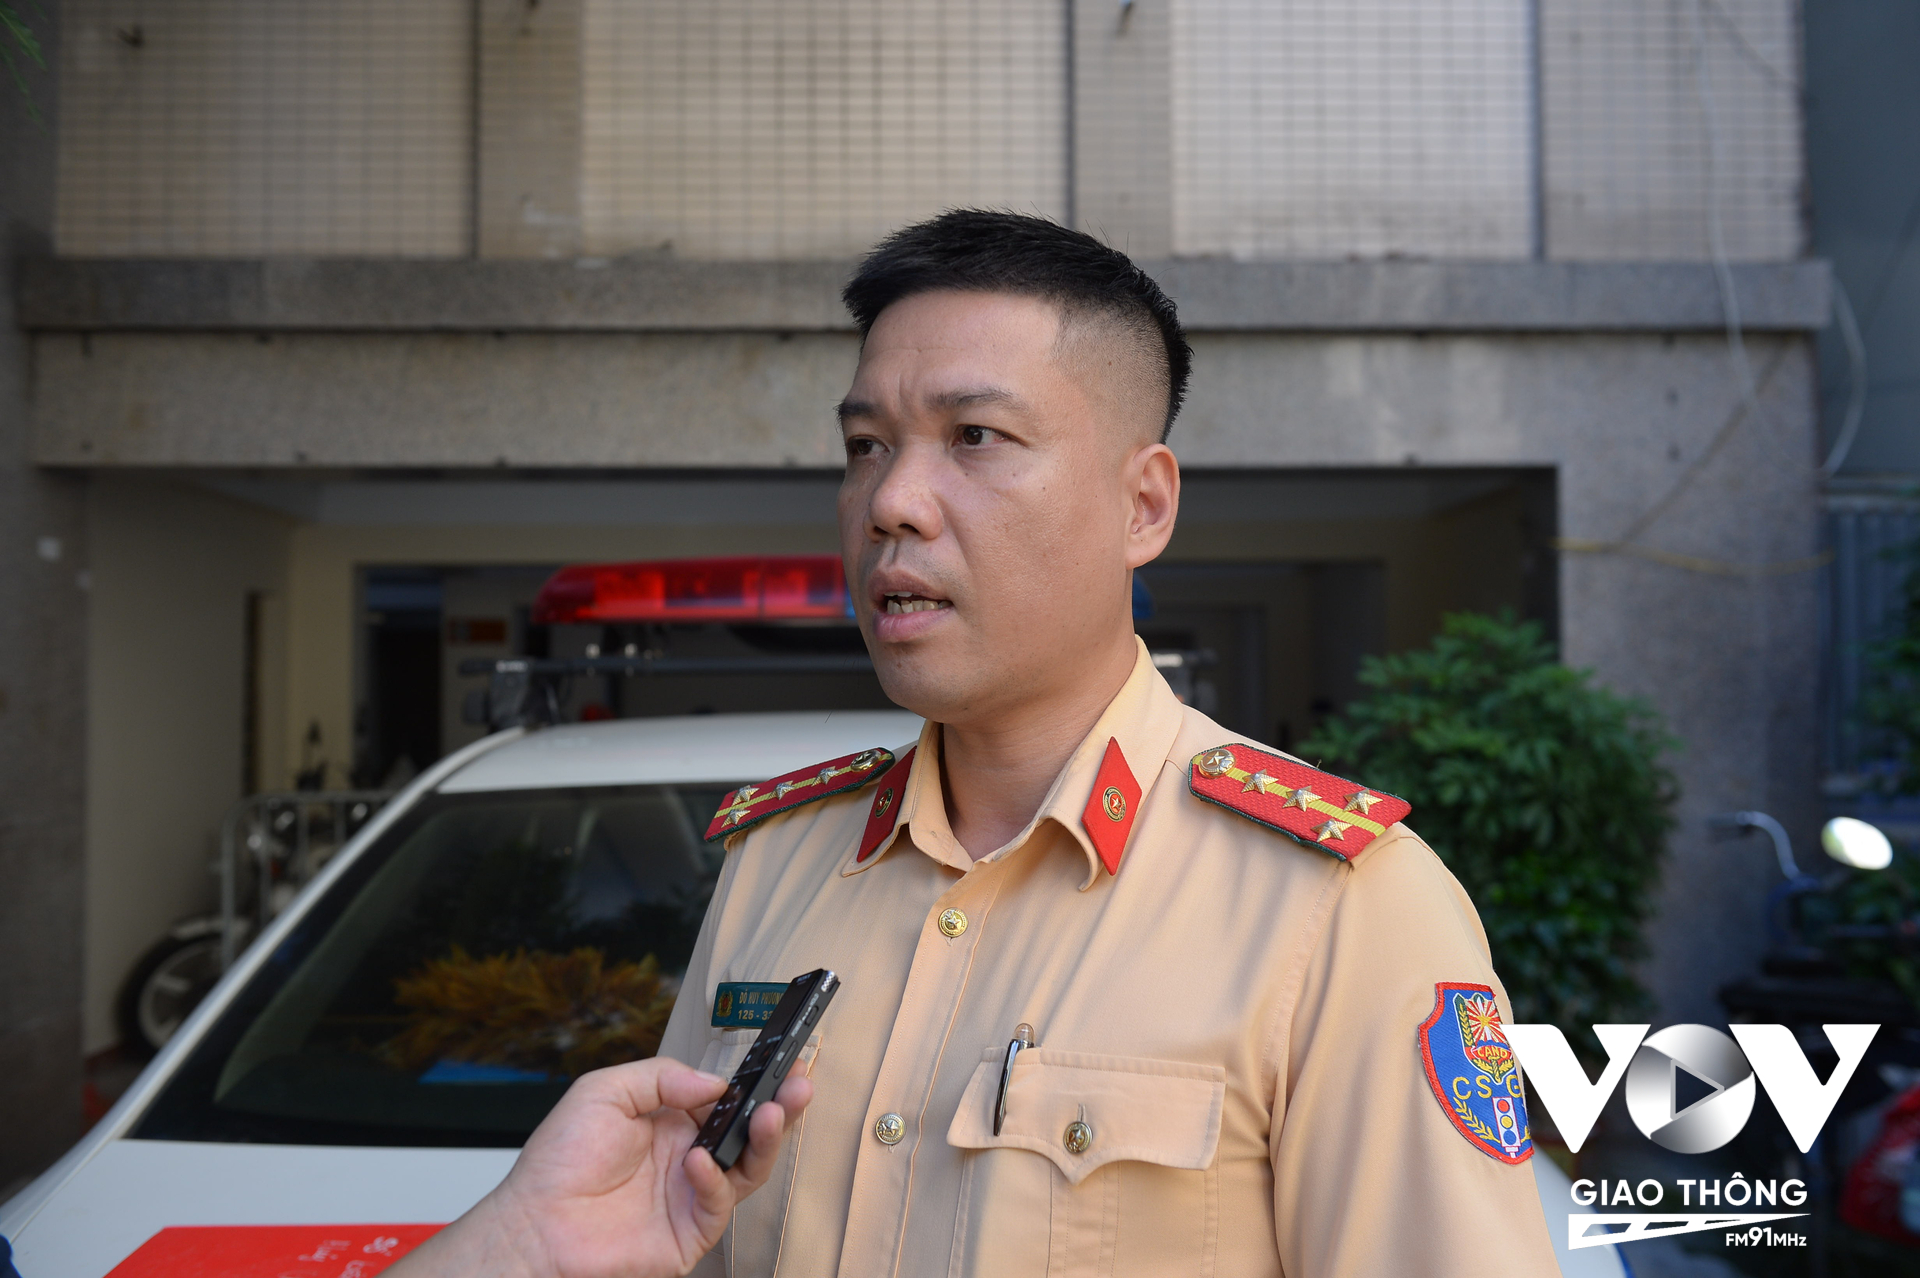 Đại úy Đỗ Huy Phương, Đội đăng ký và quản lý xe cho biết lượng hồ sơ sang tên đổi chủ tăng đột biến trong những ngày gần đây